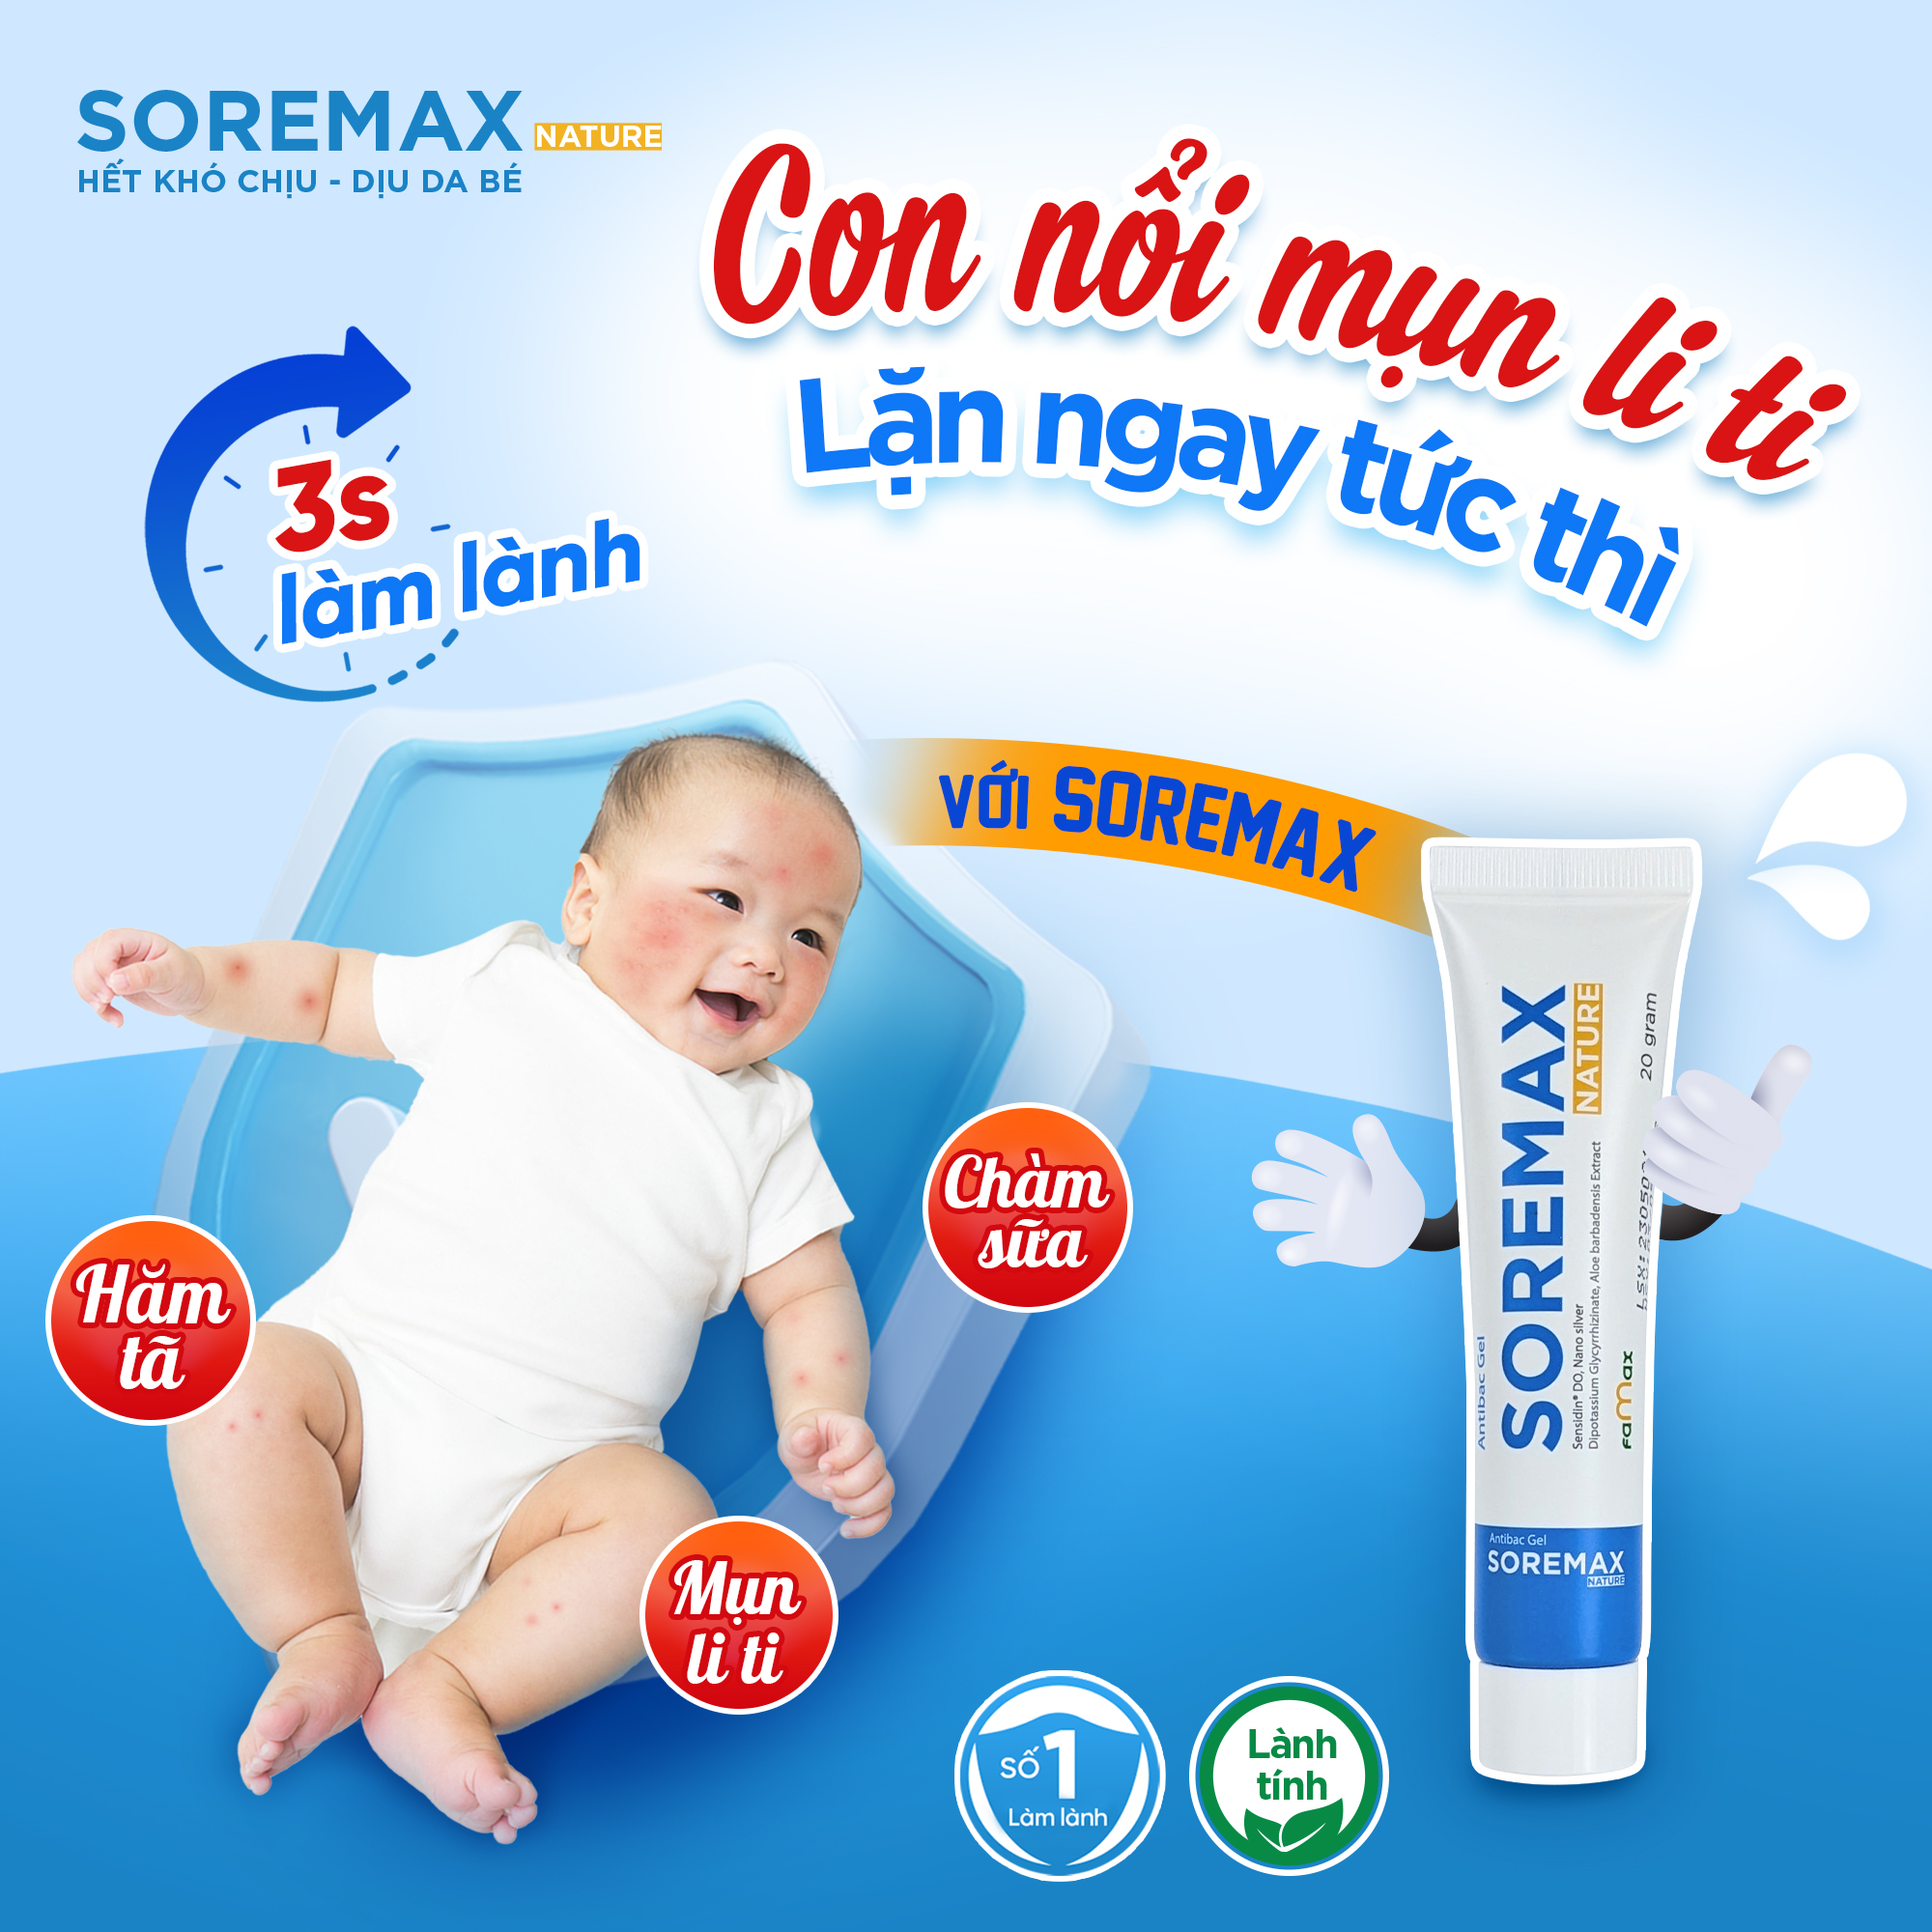 Soremax giúp giảm nhanh tình trạng mẩn đỏ ở trẻ